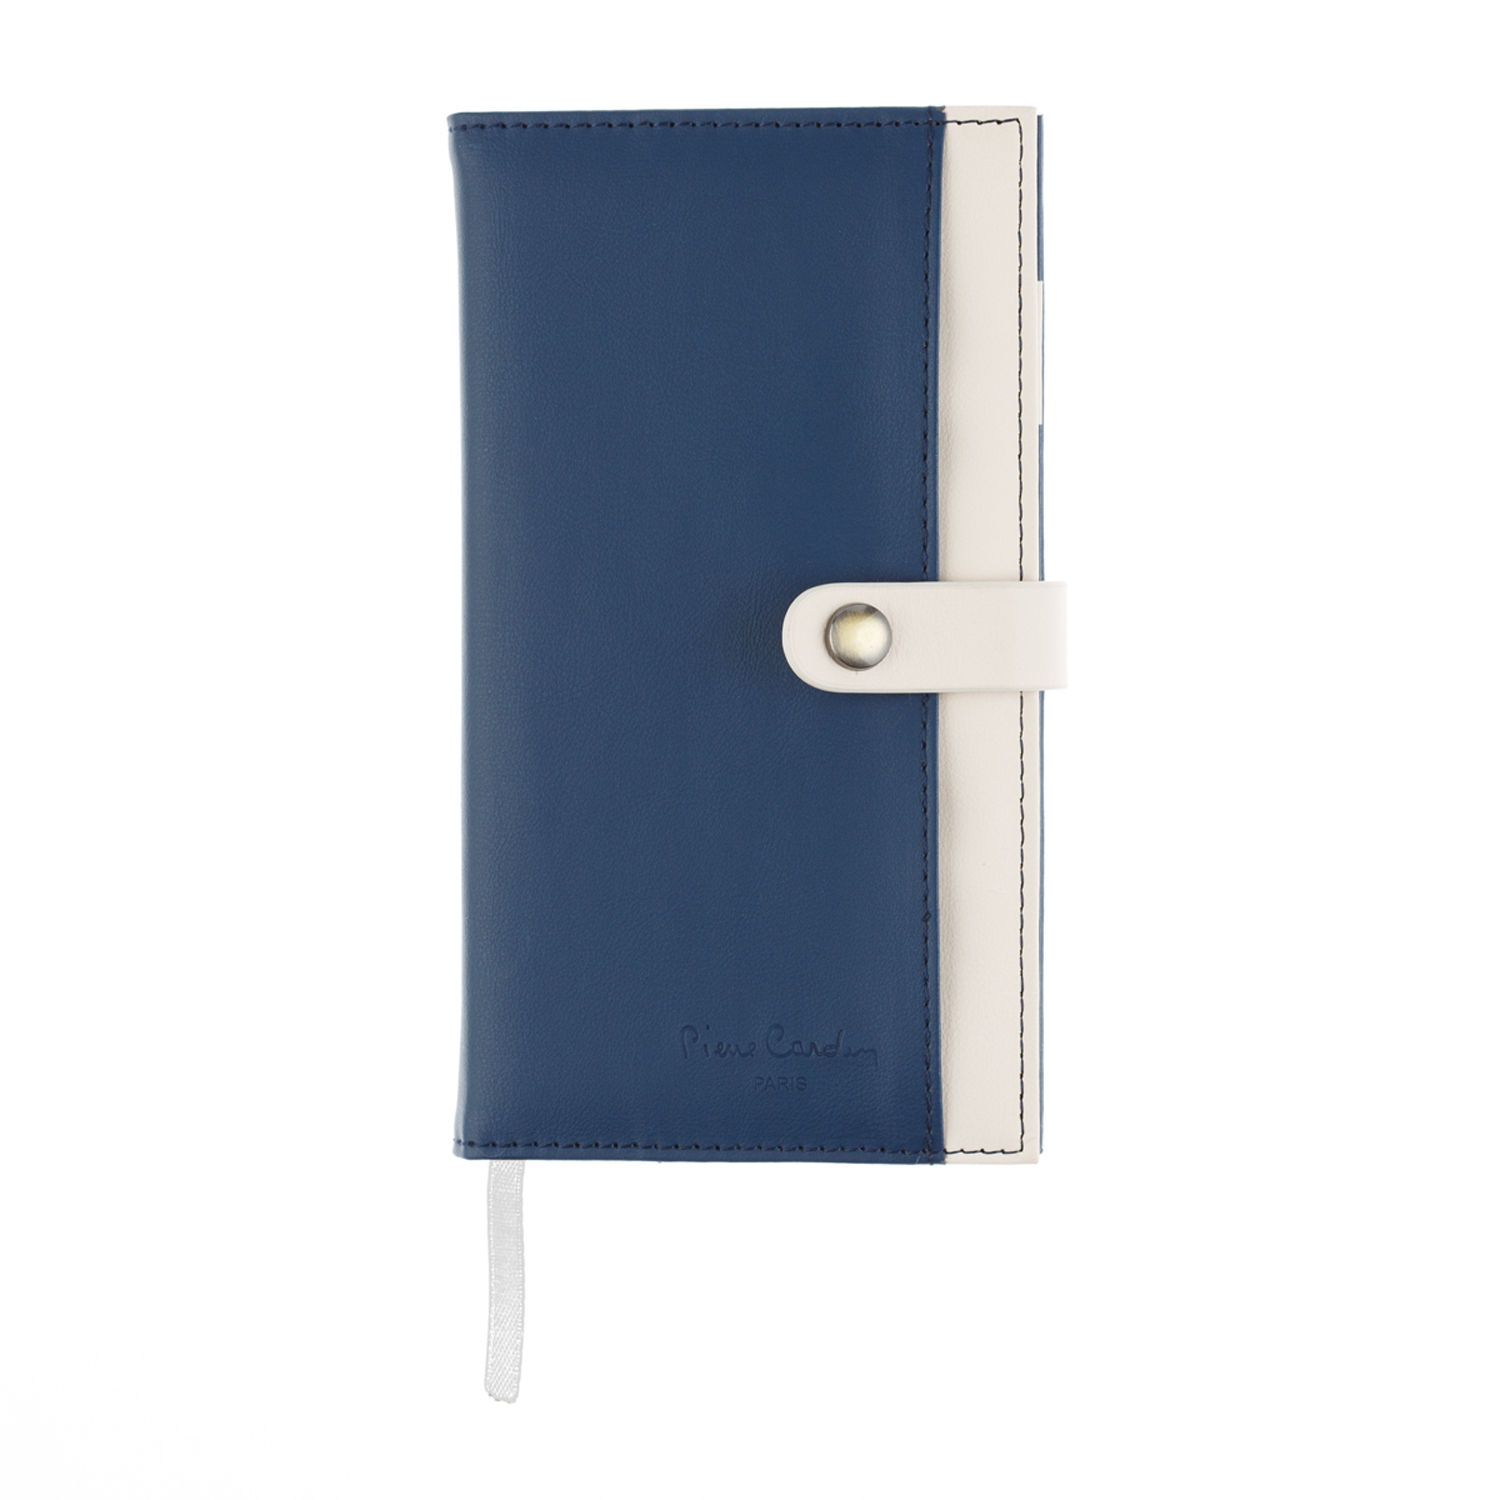 Записная книжка Pierre Cardin синяя, 10,5 х 18,5 см, синий